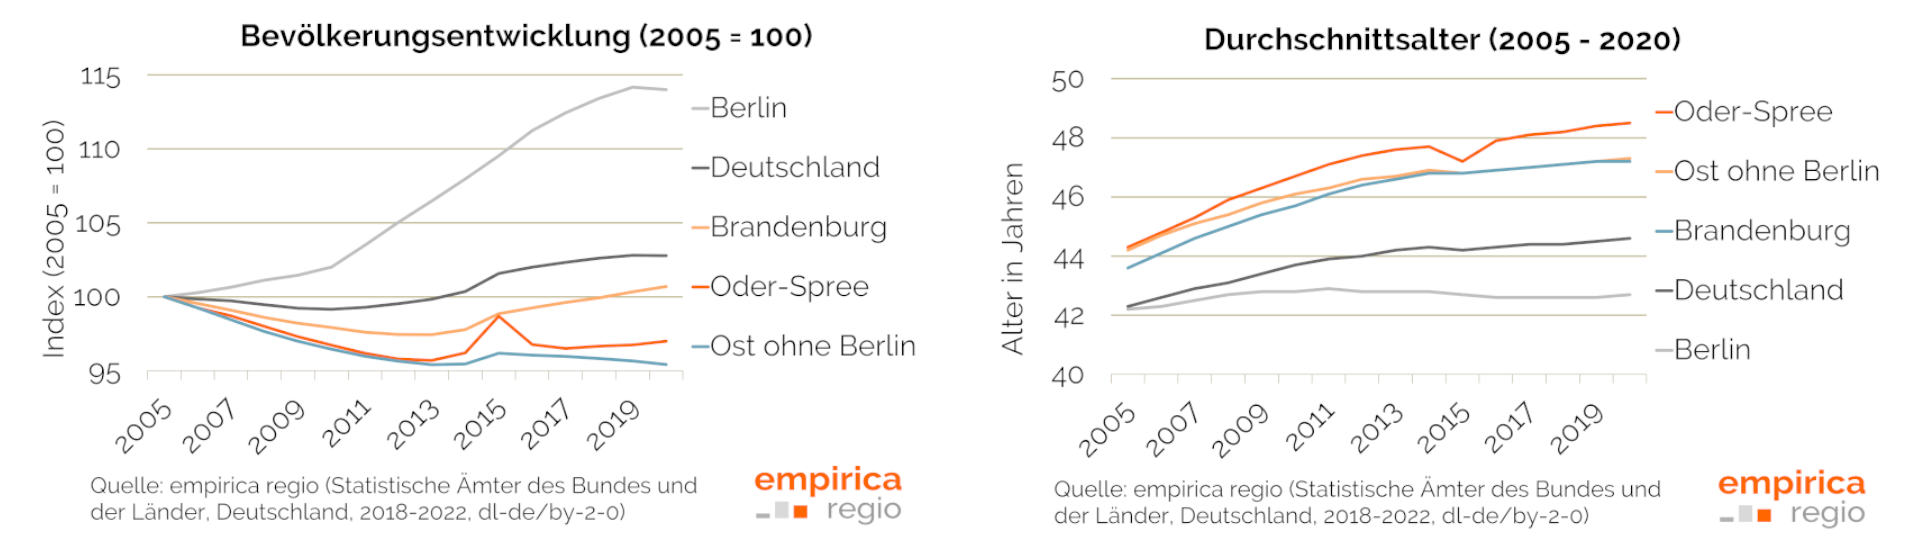 Demografische Entwicklung im Landkreis Oder-Spree und Vergleichsregionen